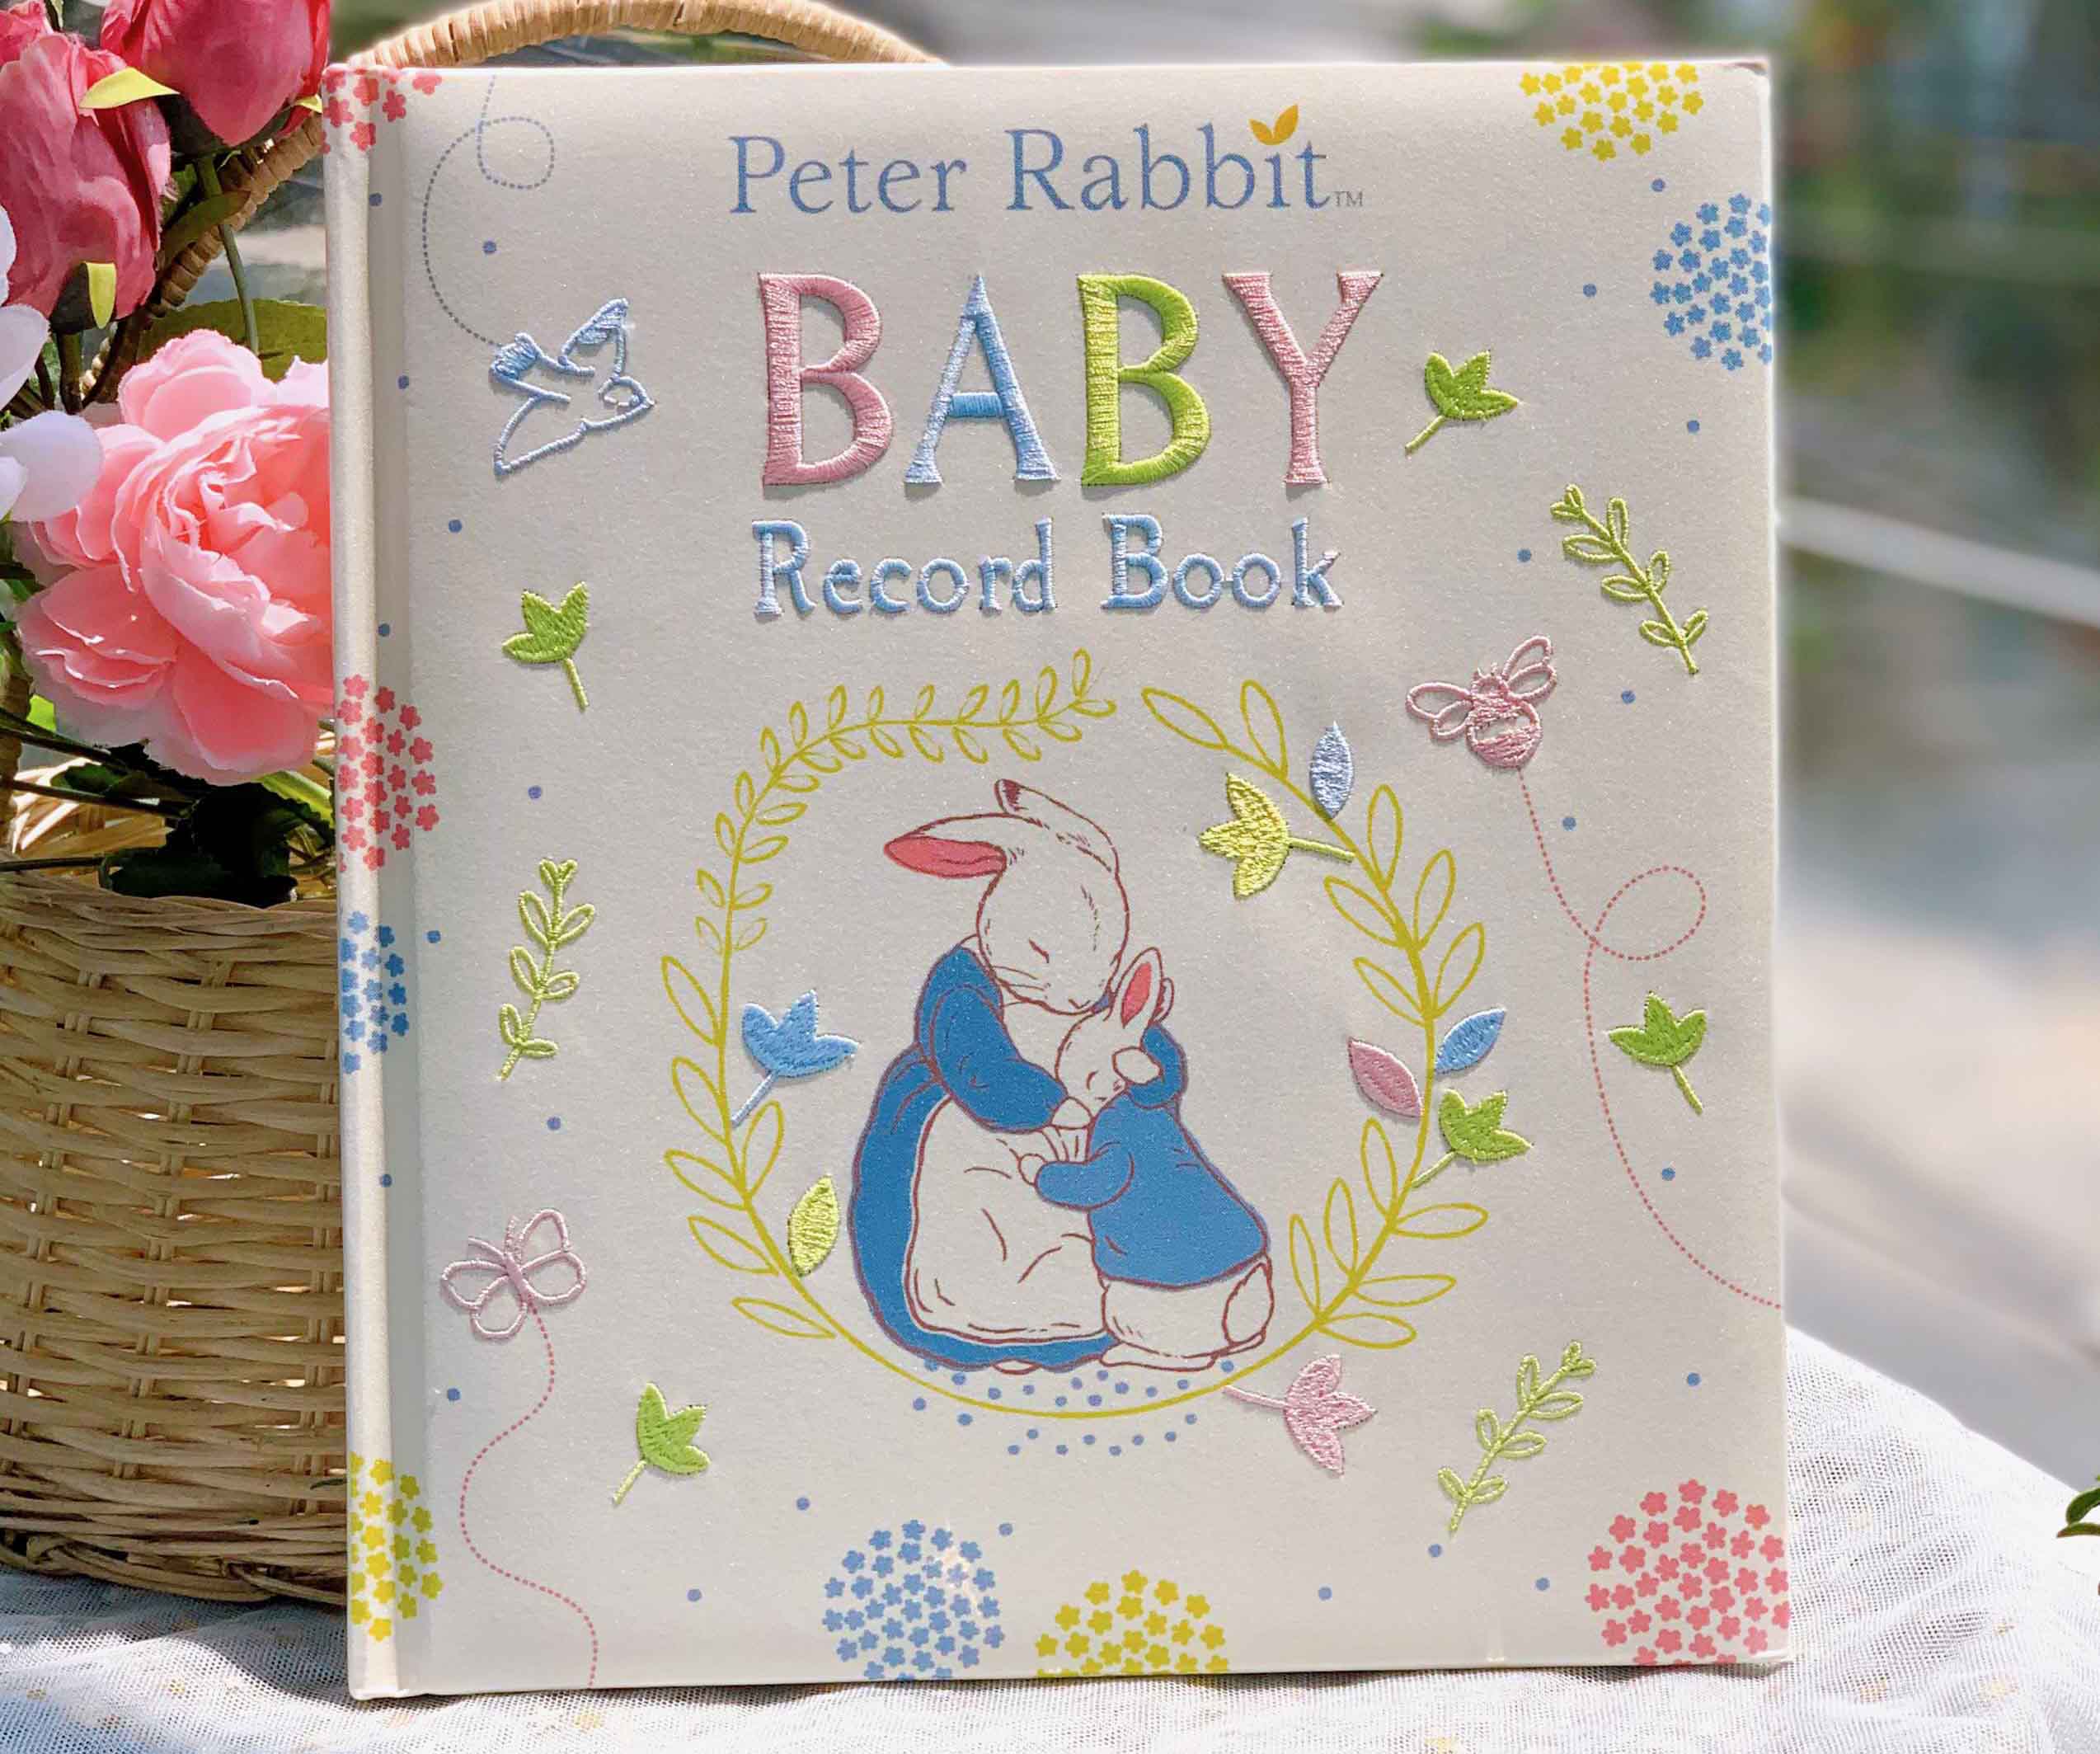 Với sổ ghi chép bé Peter Rabbit đầy màu sắc và ngộ nghĩnh, bạn sẽ trở thành người bạn đồng hành đáng tin cậy và lý tưởng cho con cái của mình. Sử dụng sổ ghi chép hai chiều này để giải trí, học tập và tạo niềm vui cho cuộc sống của mình.